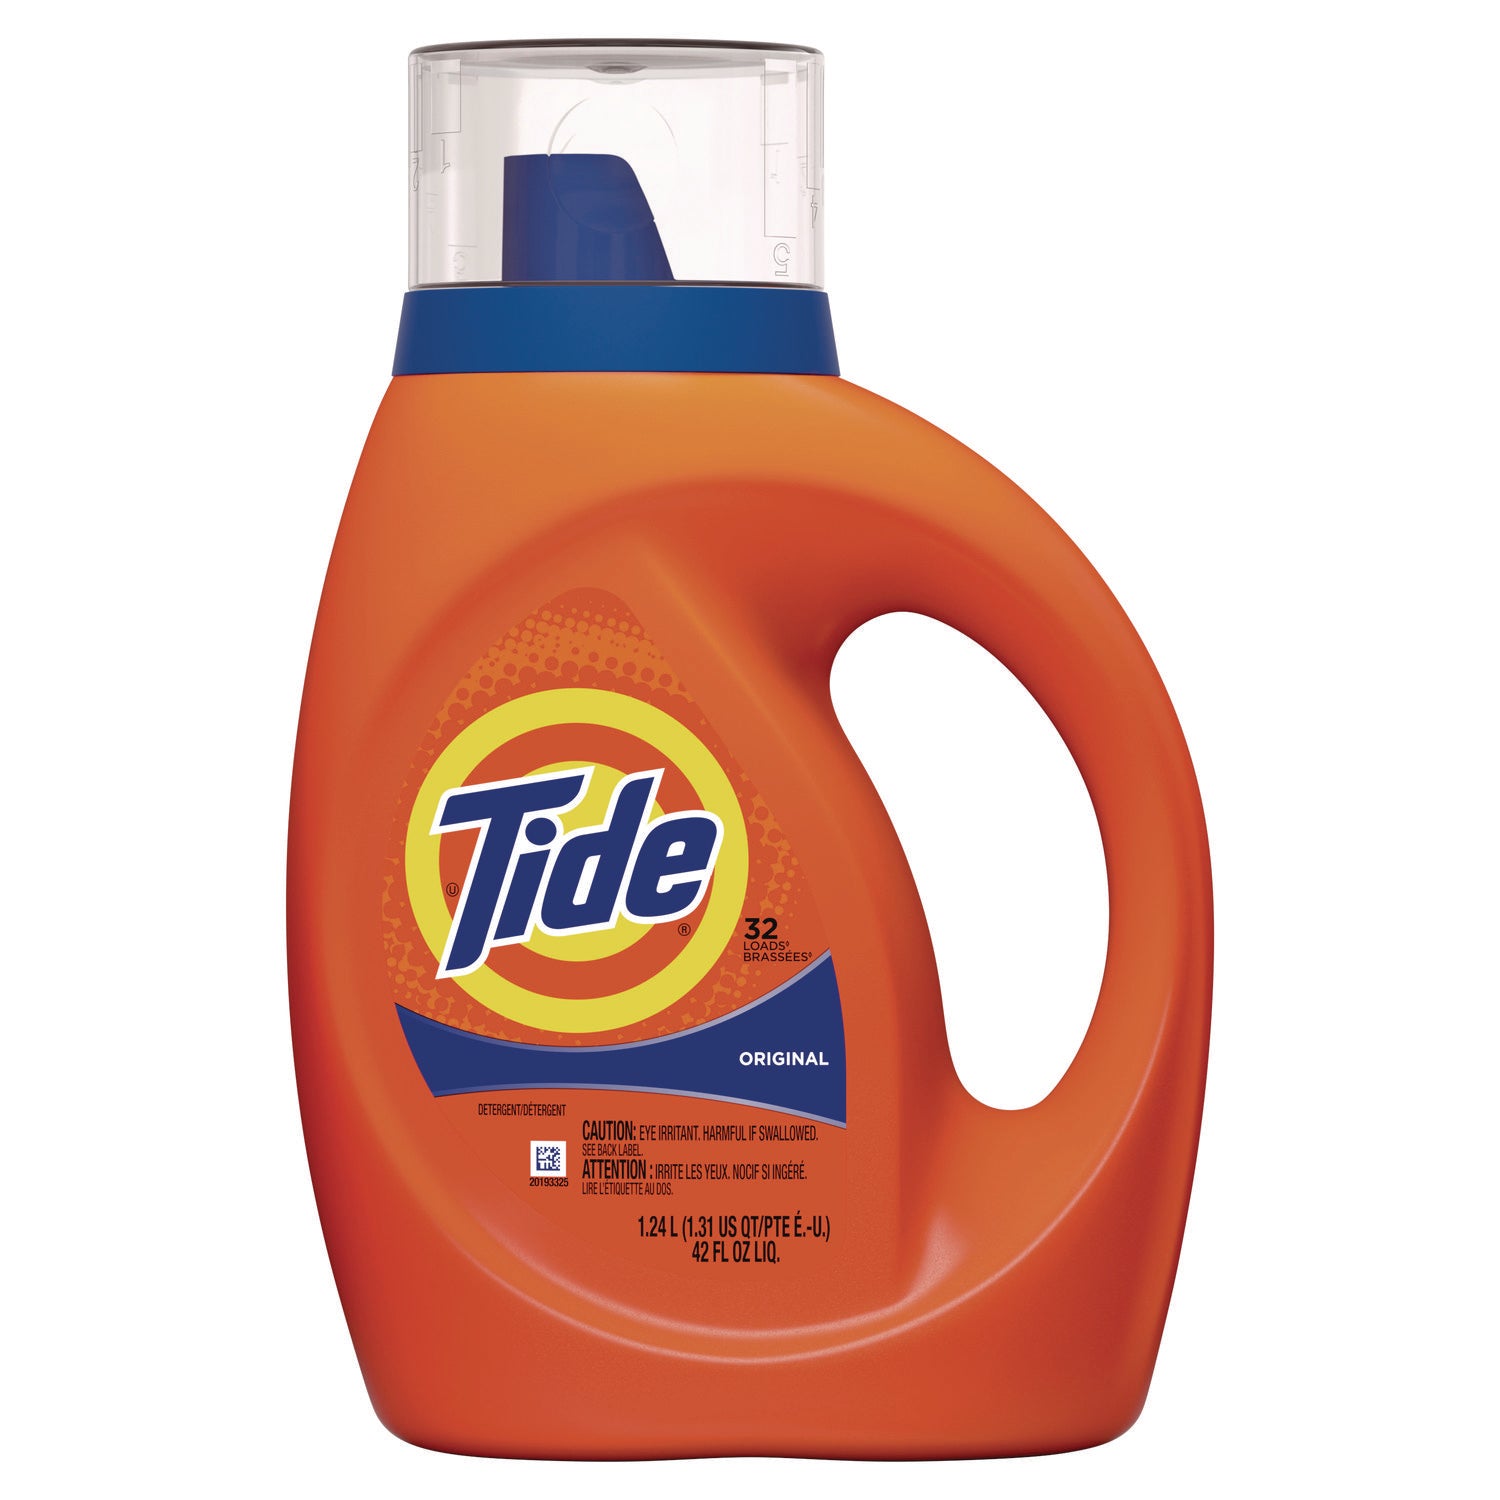 Tide Original Laundry Detergent - Concentrate - 46 fl oz (1.4 quart) - Original Scent - 1 Bottle - Blue - 1